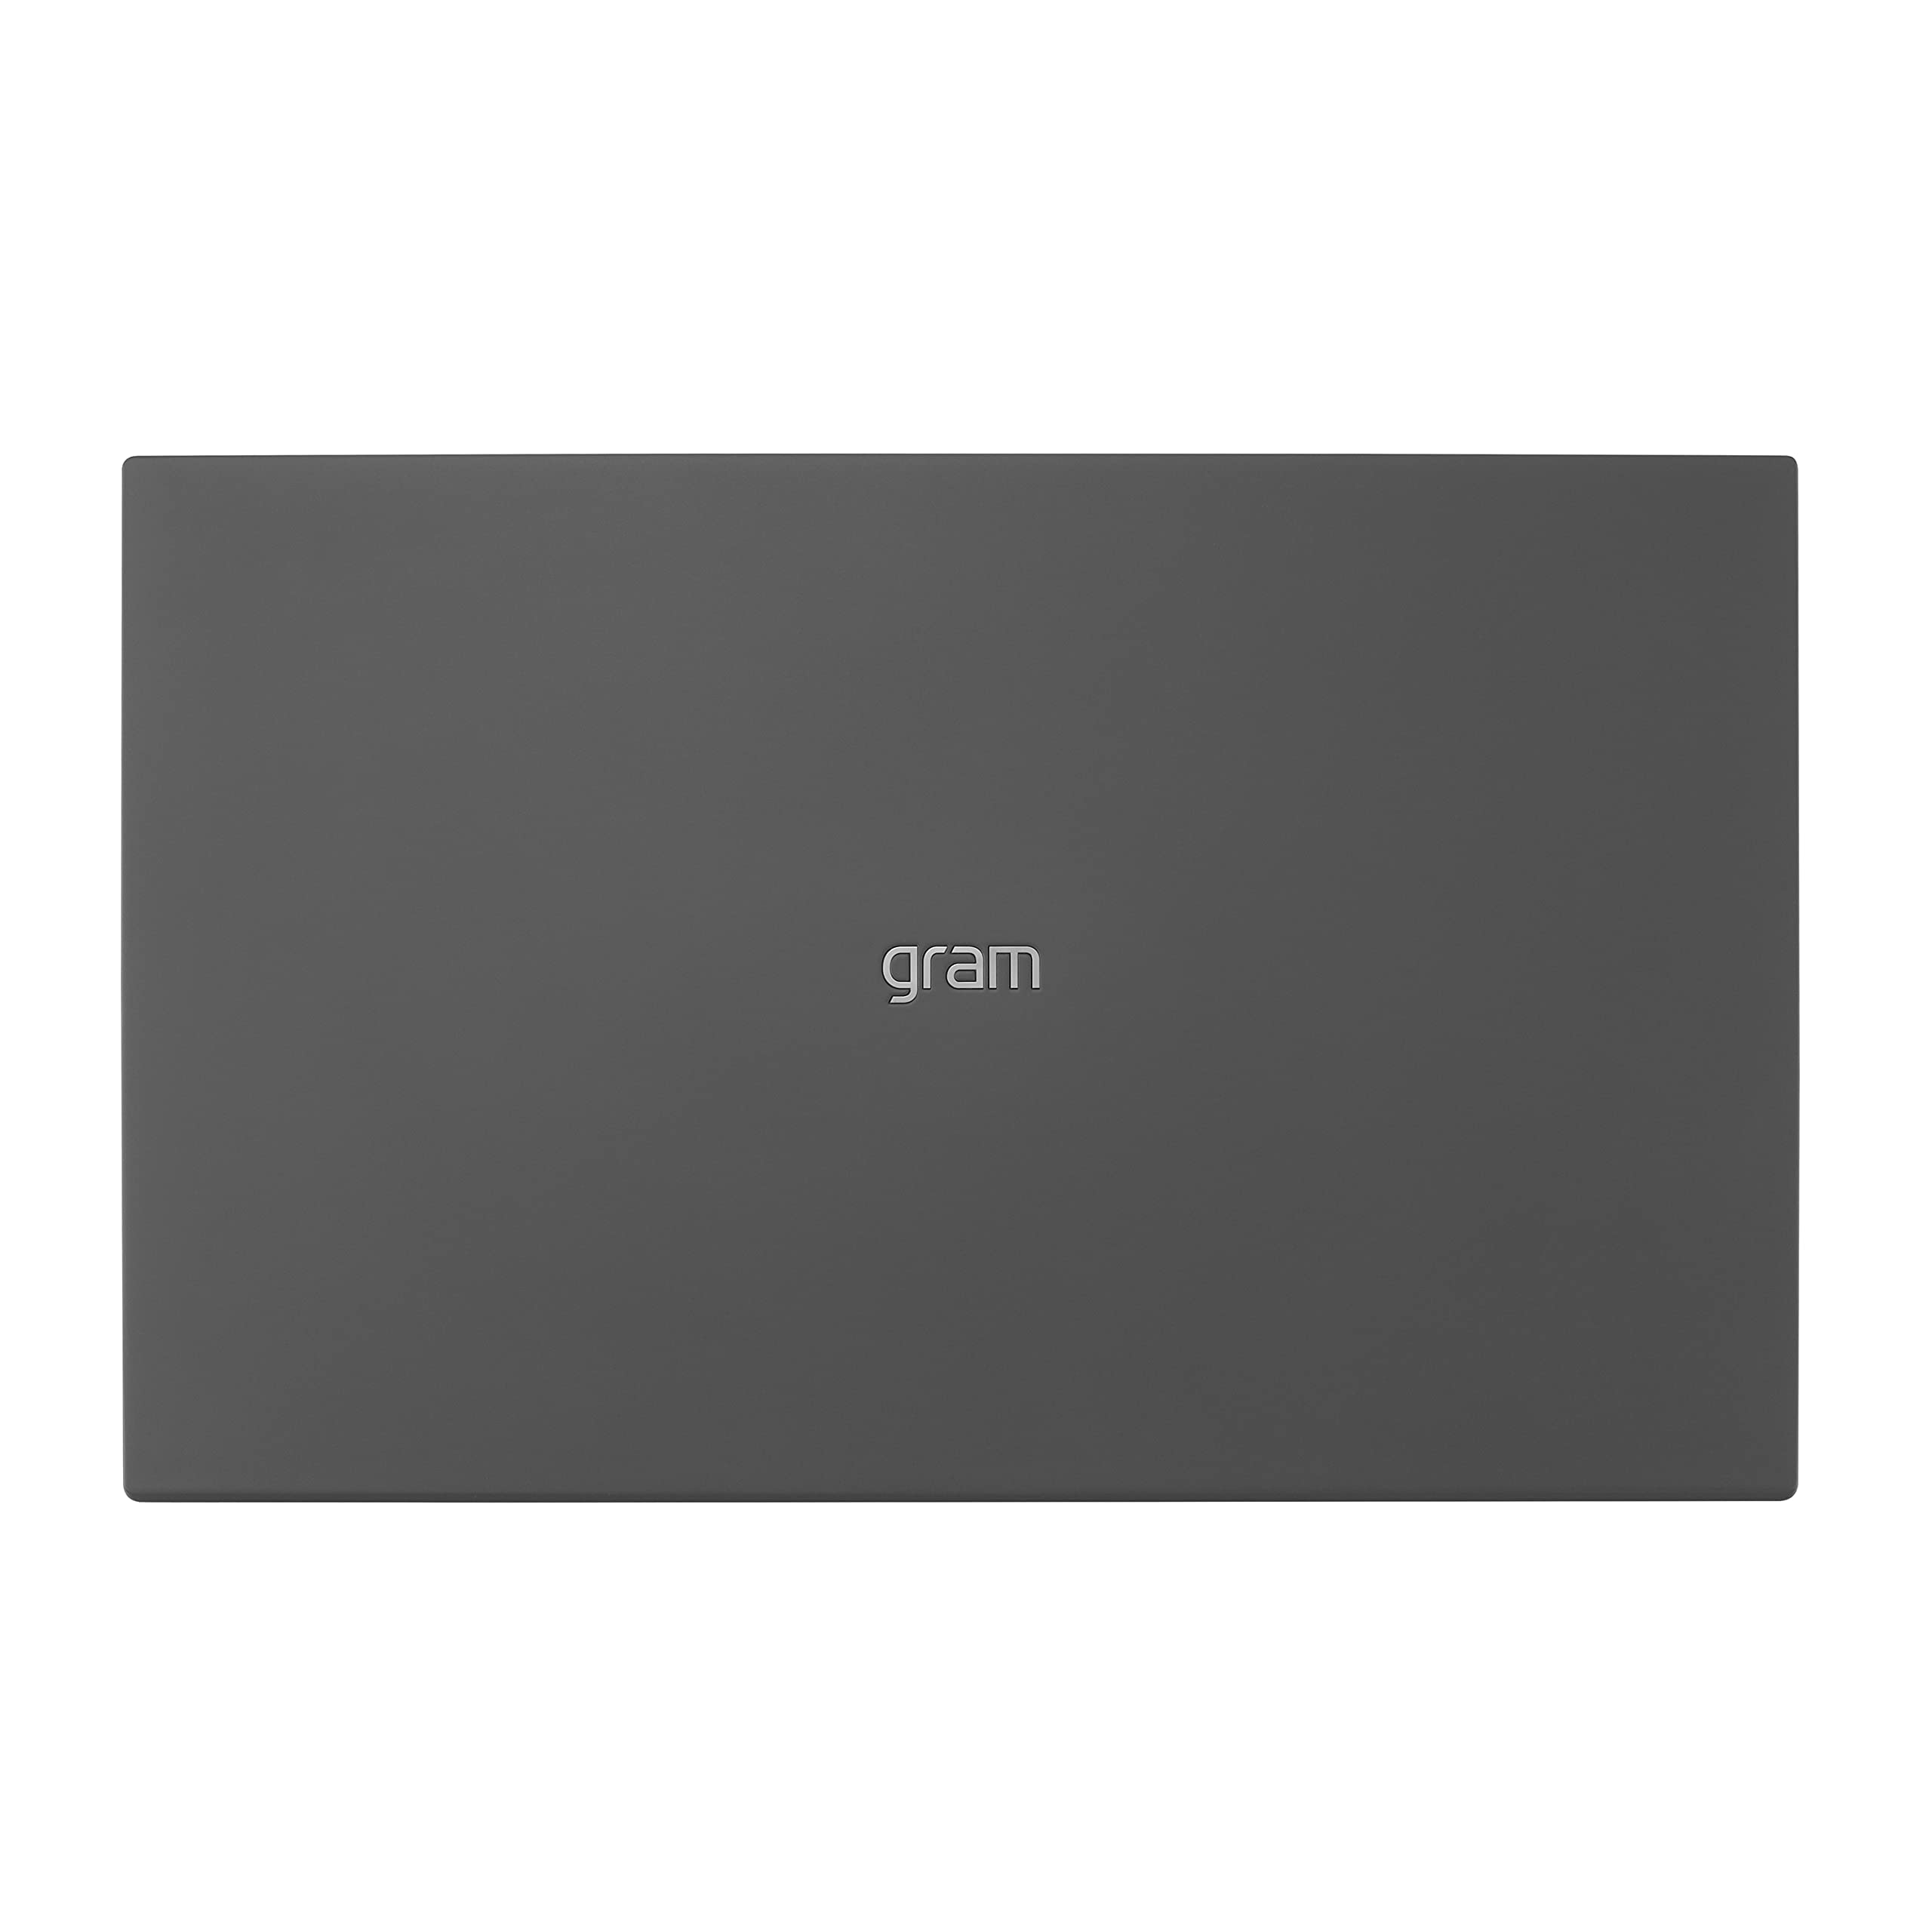 LG gram (2022) Laptop 15Z90Q 15.6